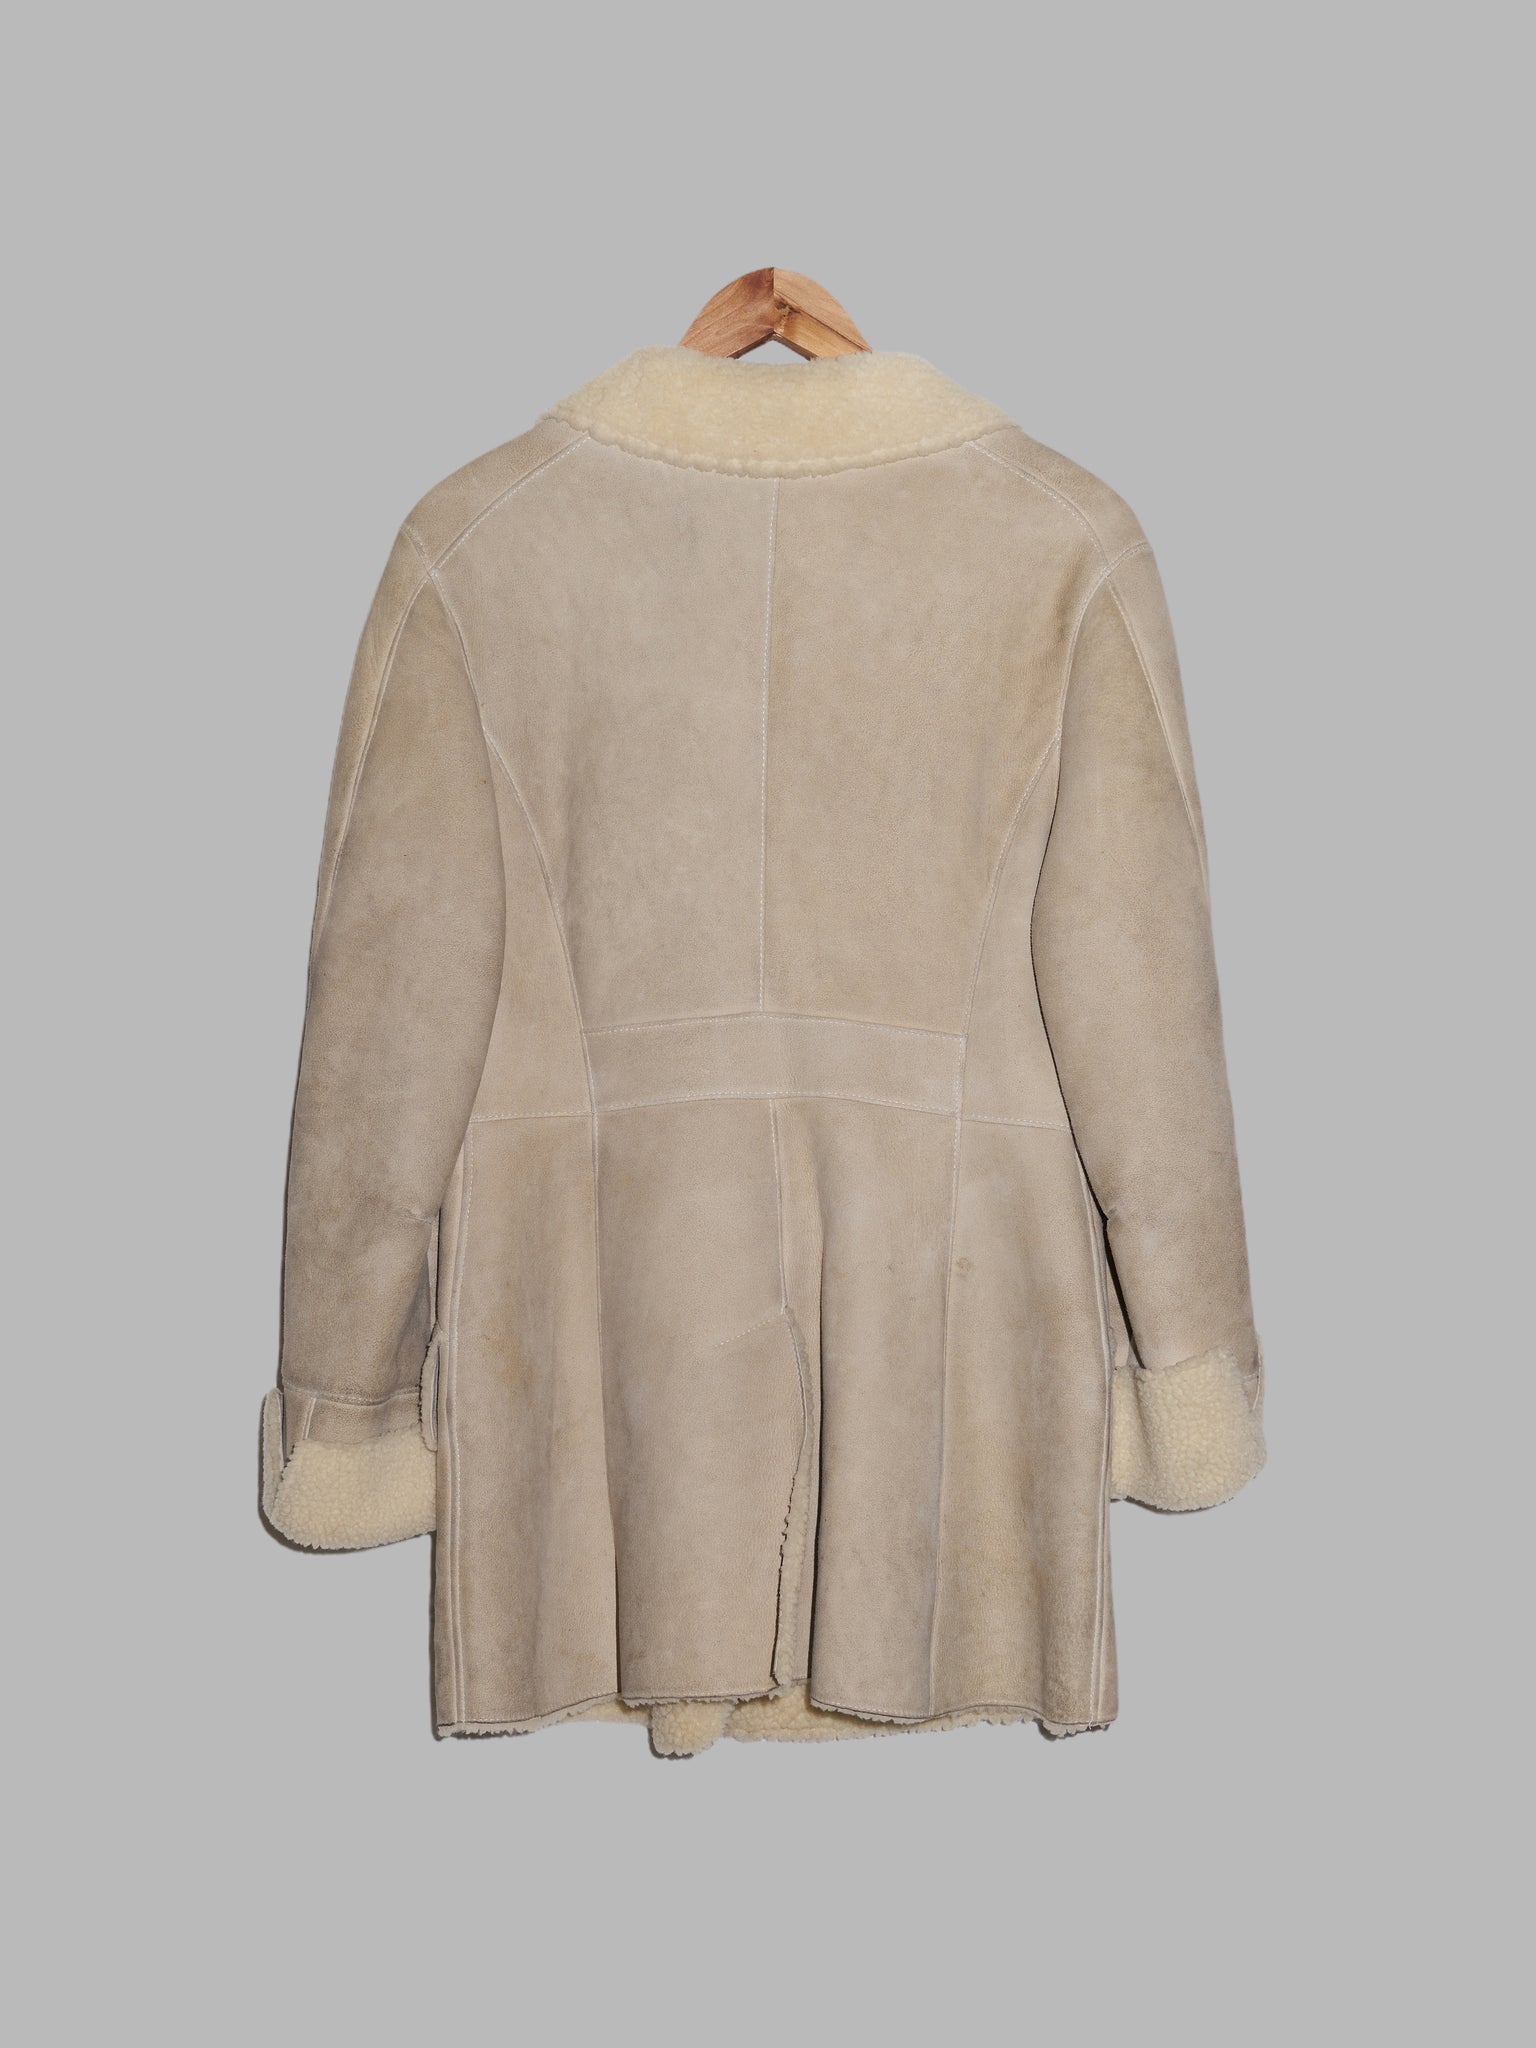 Christophe Lemaire pour Marsil Paris beige leather 3 button mouton coat - sz 38